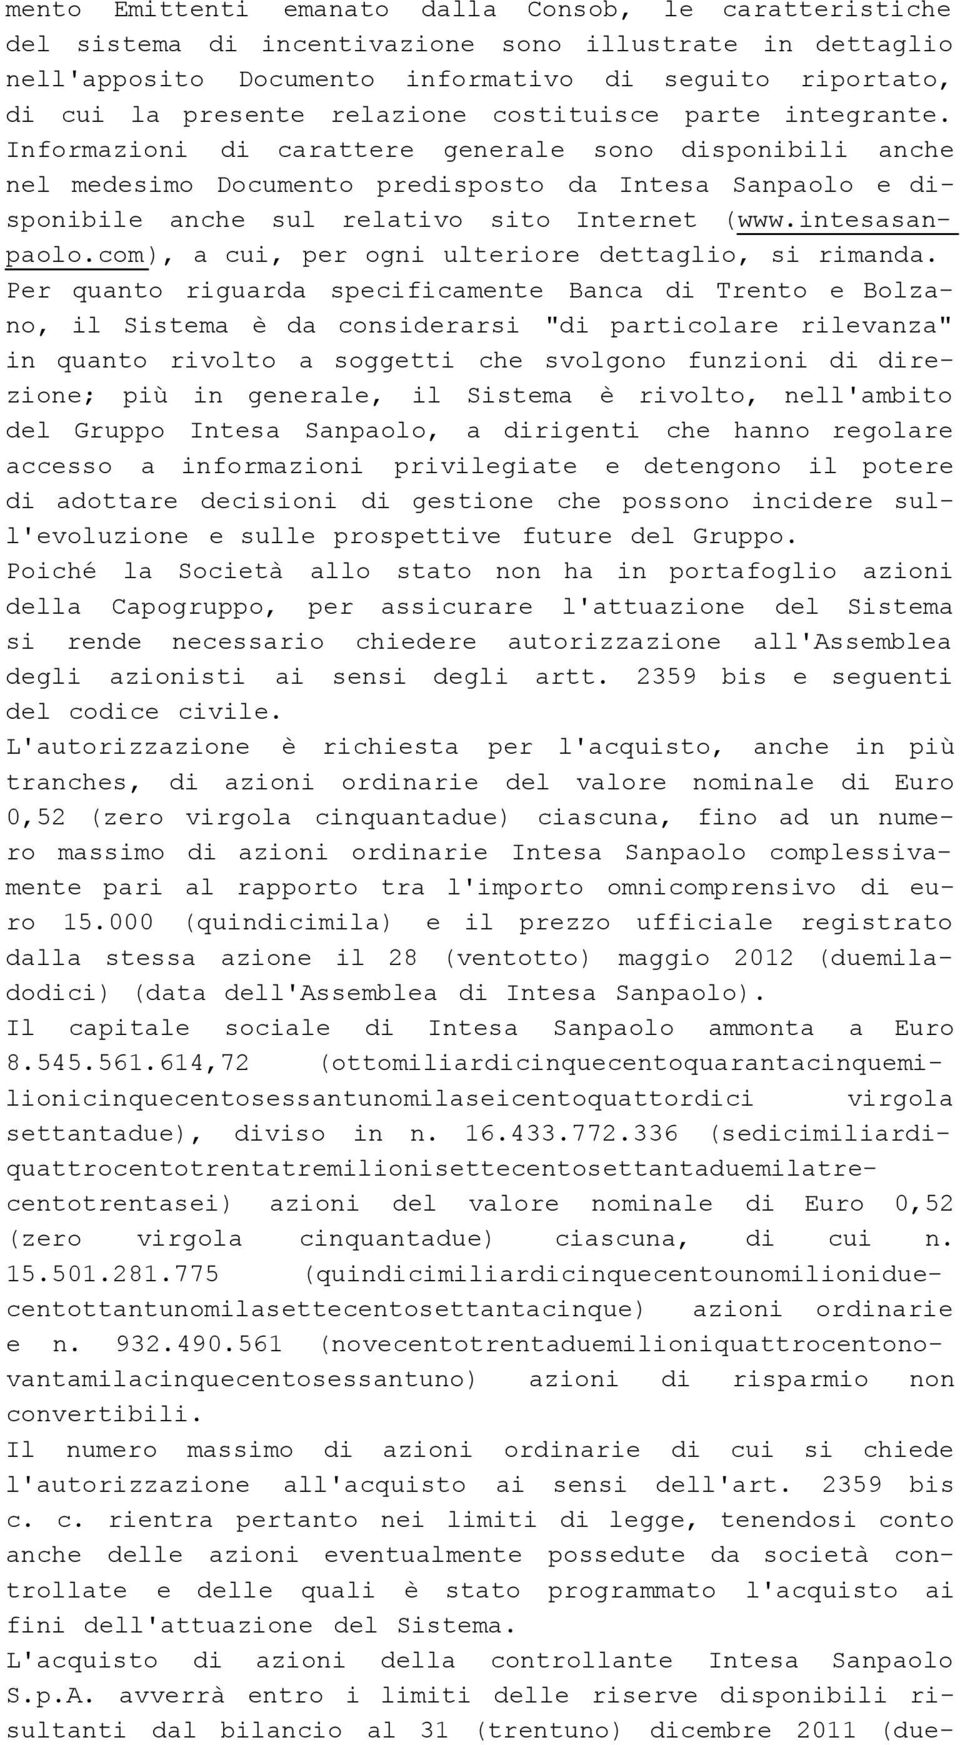 Informazioni di carattere generale sono disponibili anche nel medesimo Documento predisposto da Intesa Sanpaolo e disponibile anche sul relativo sito Internet (www.intesasanpaolo.